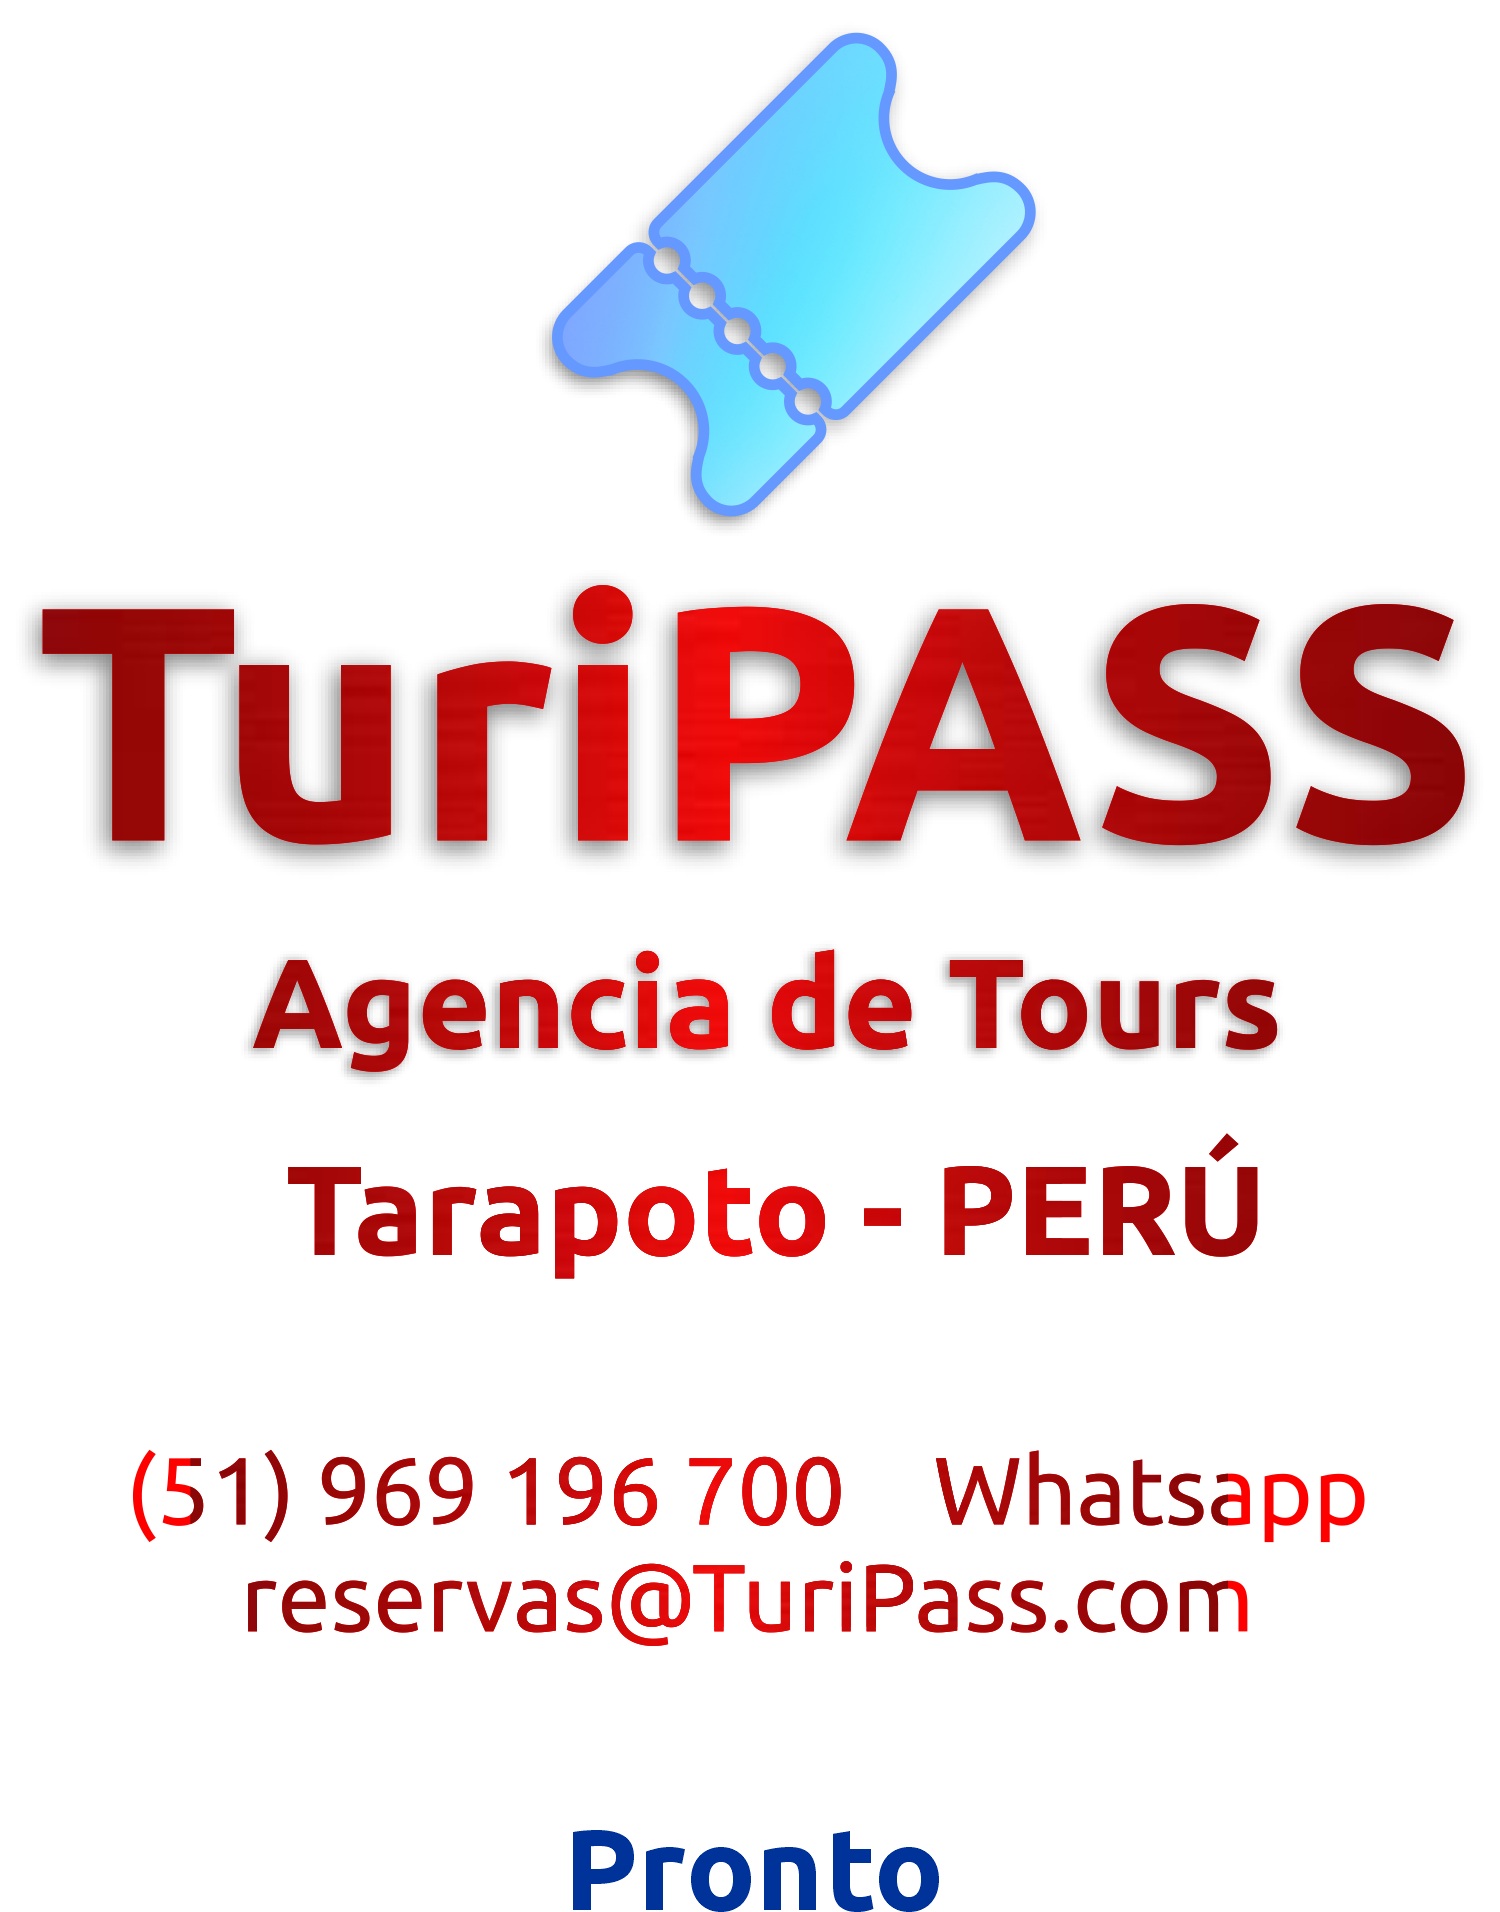 turipass - cover01